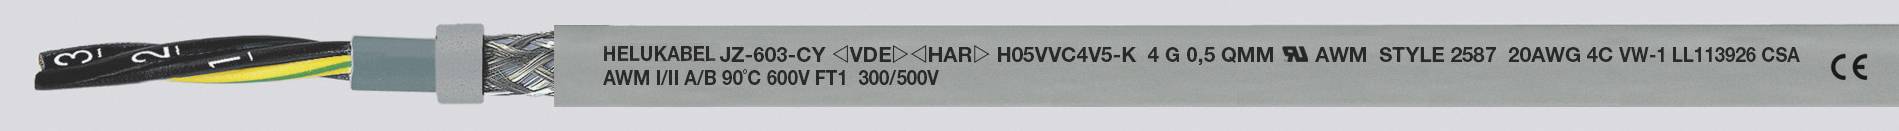 HELUKABEL JZ-603-CY Steuerleitung 3 G 0.75 mm² Grau 83731-1000 1000 m